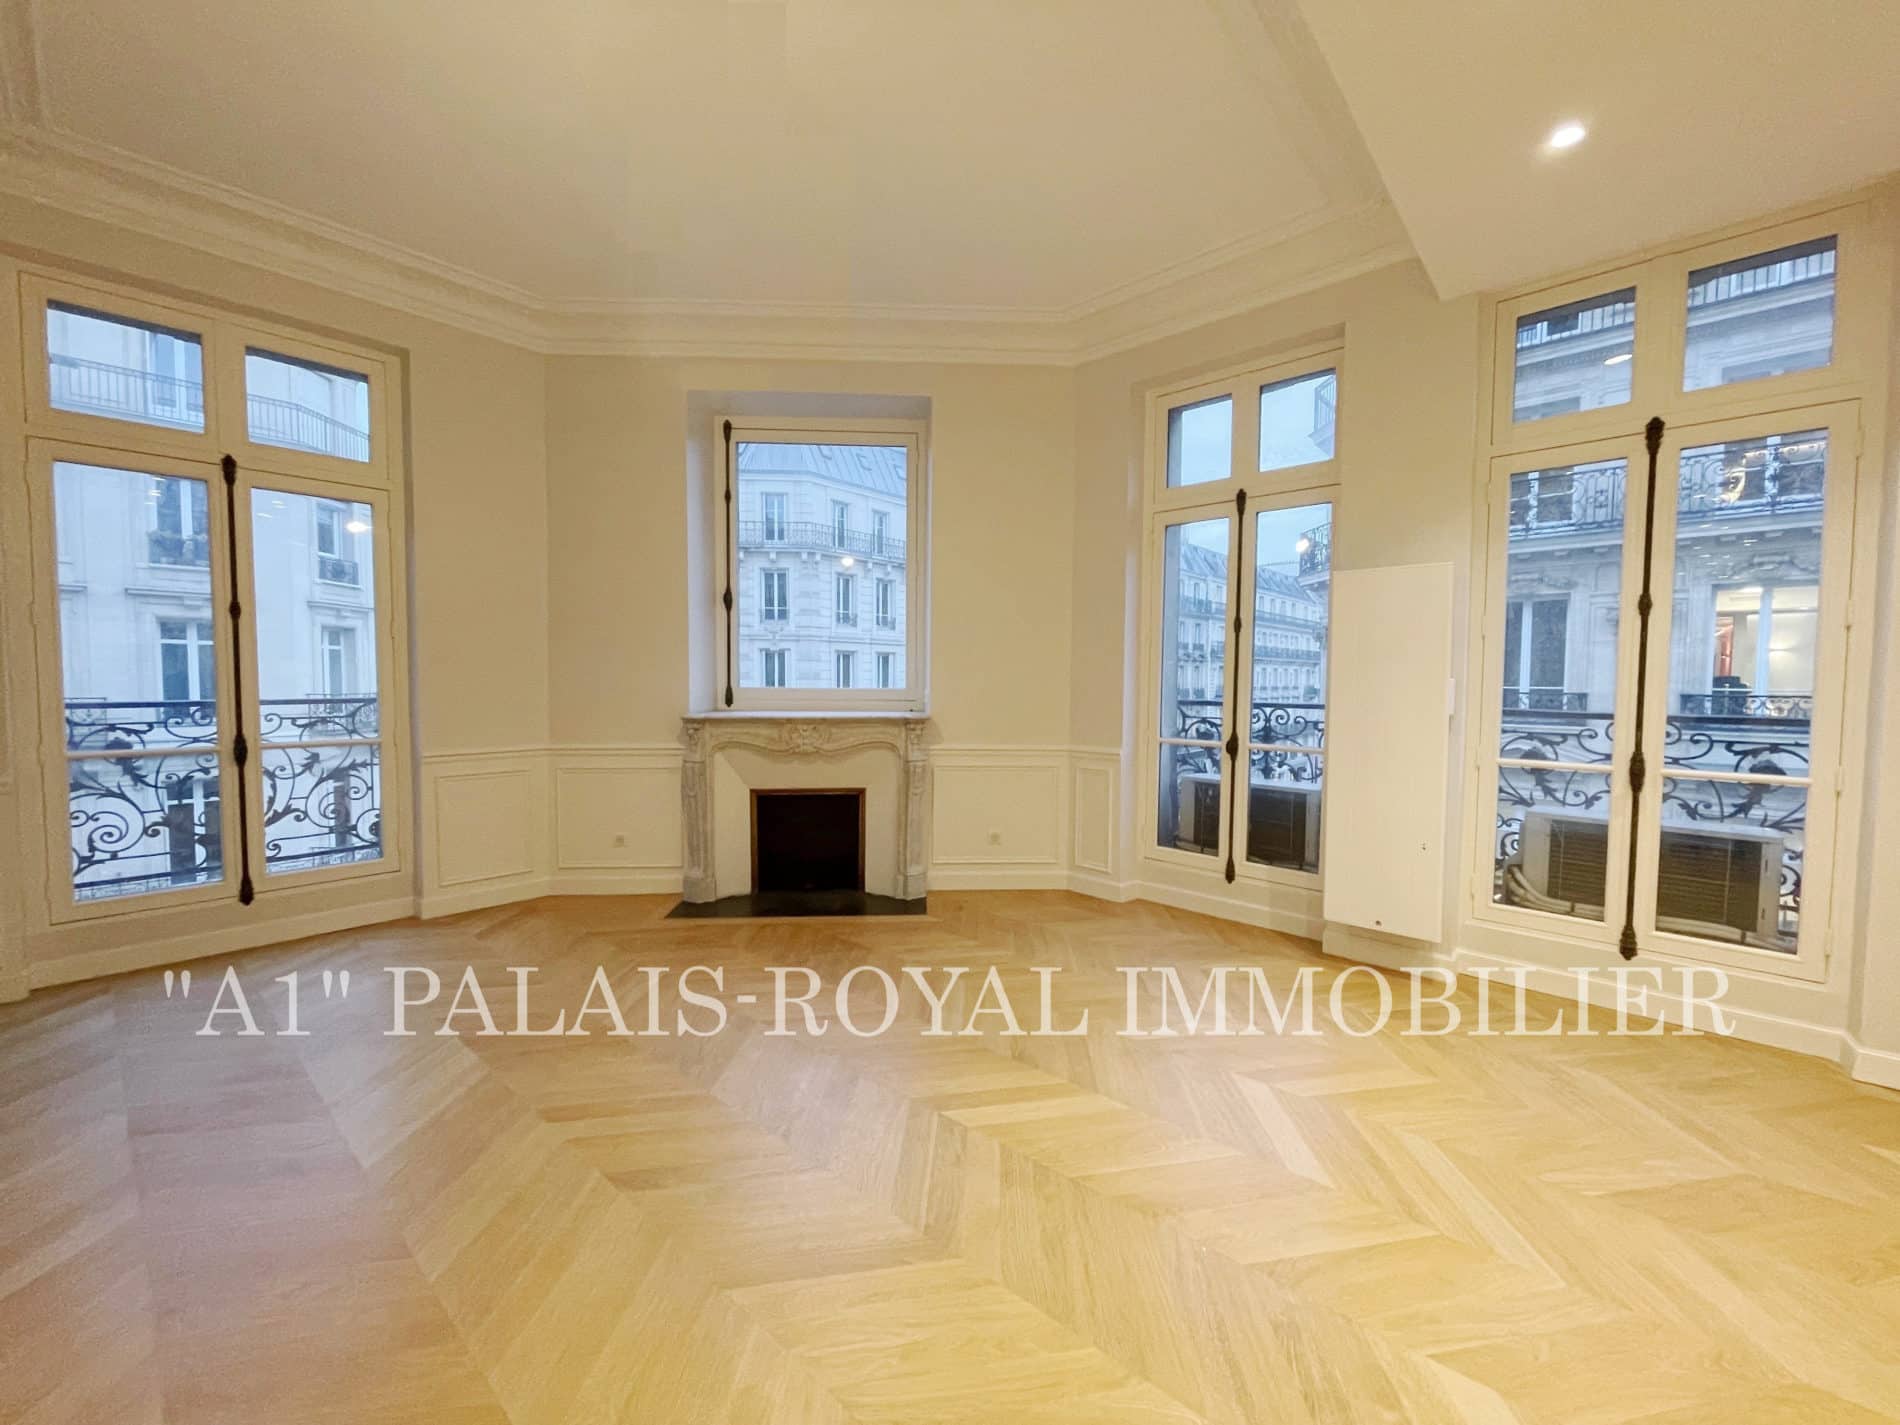 Paris 2 - Appartement classique rénové - 4 Pièces - Palais-Royal - Bourse - Soleil -